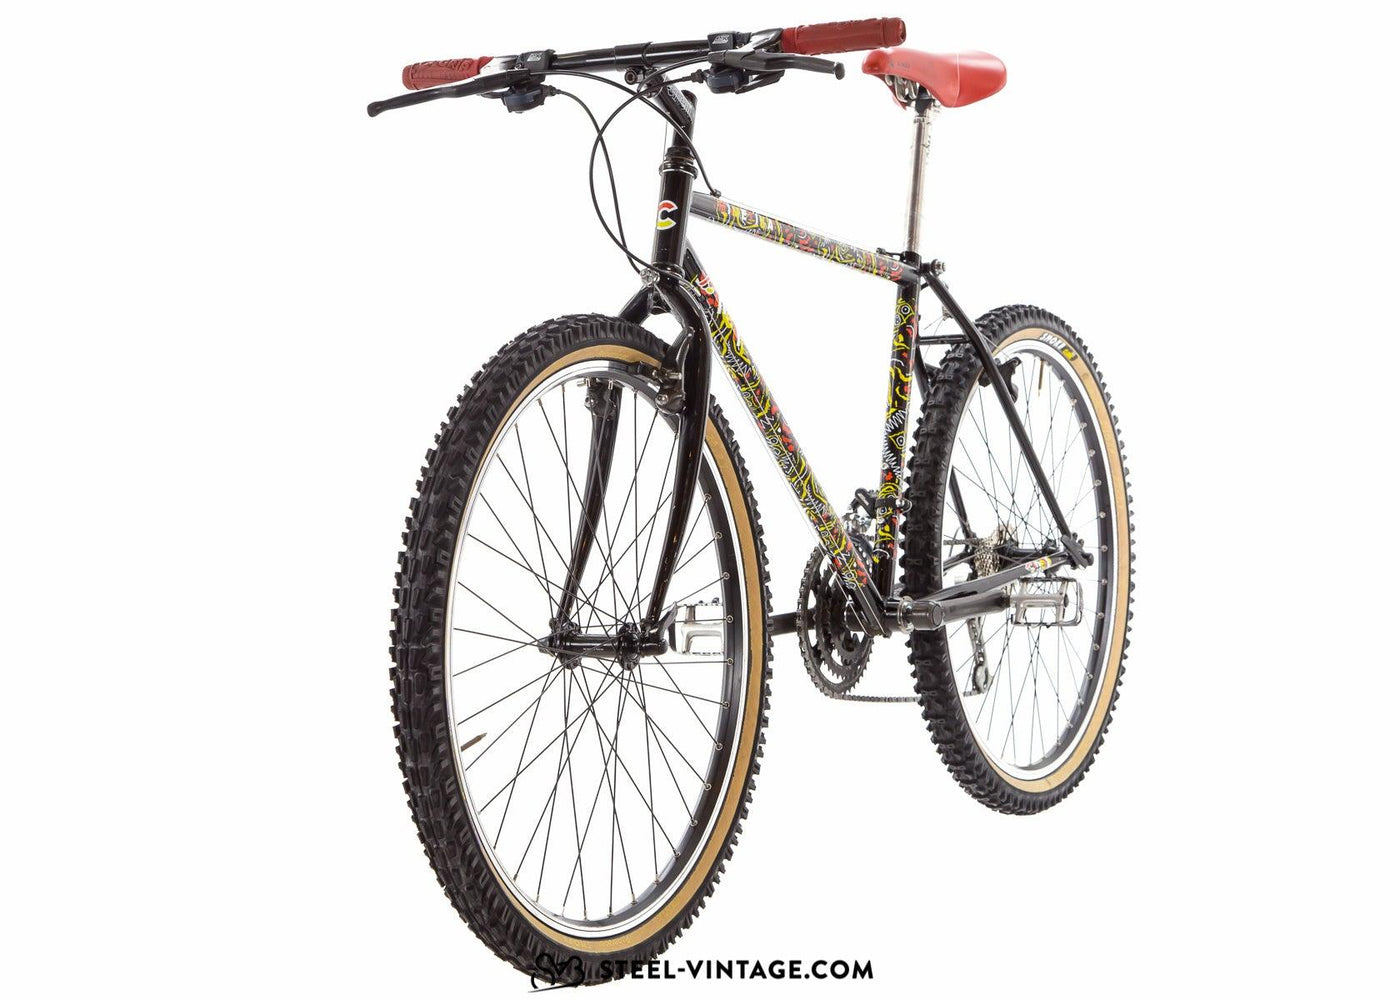 Cinelli Mimetika Vintage MTB 1980s - Steel Vintage Bikes